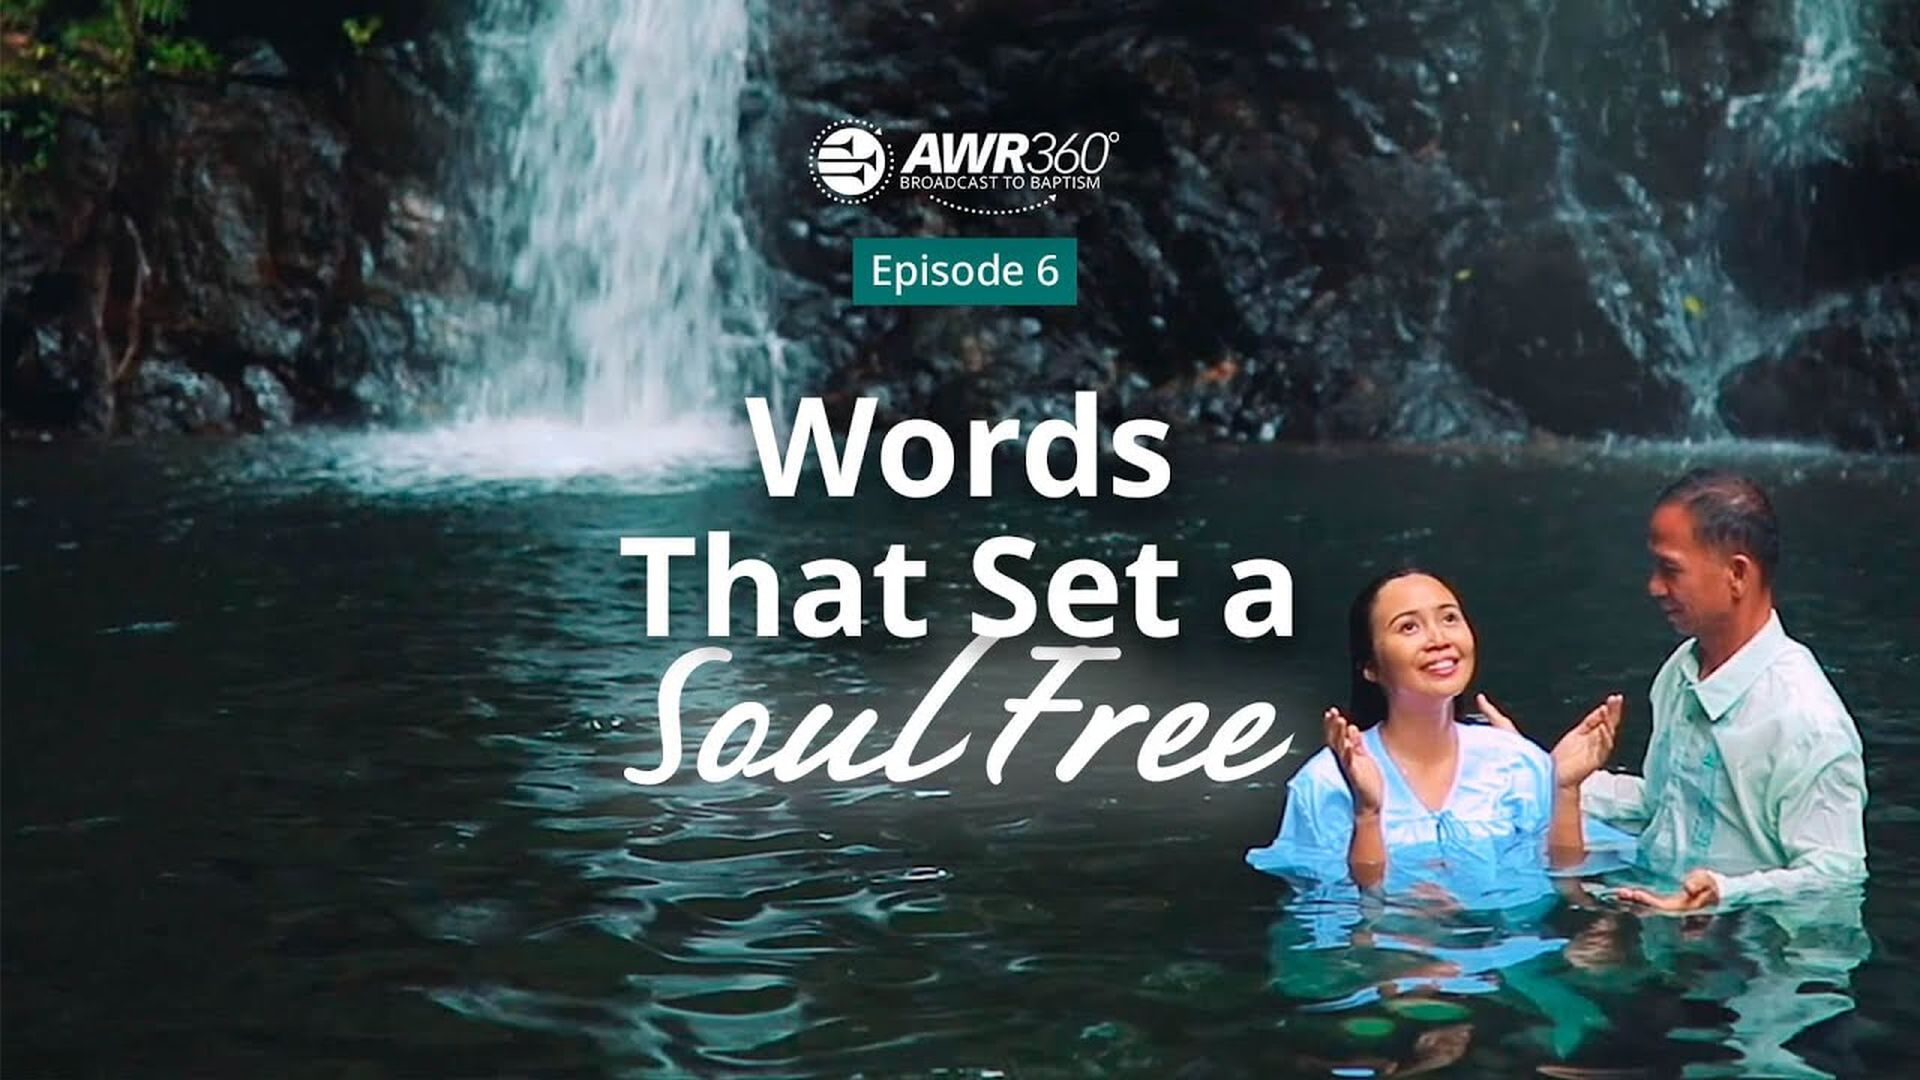 Words that Set a Soul Free